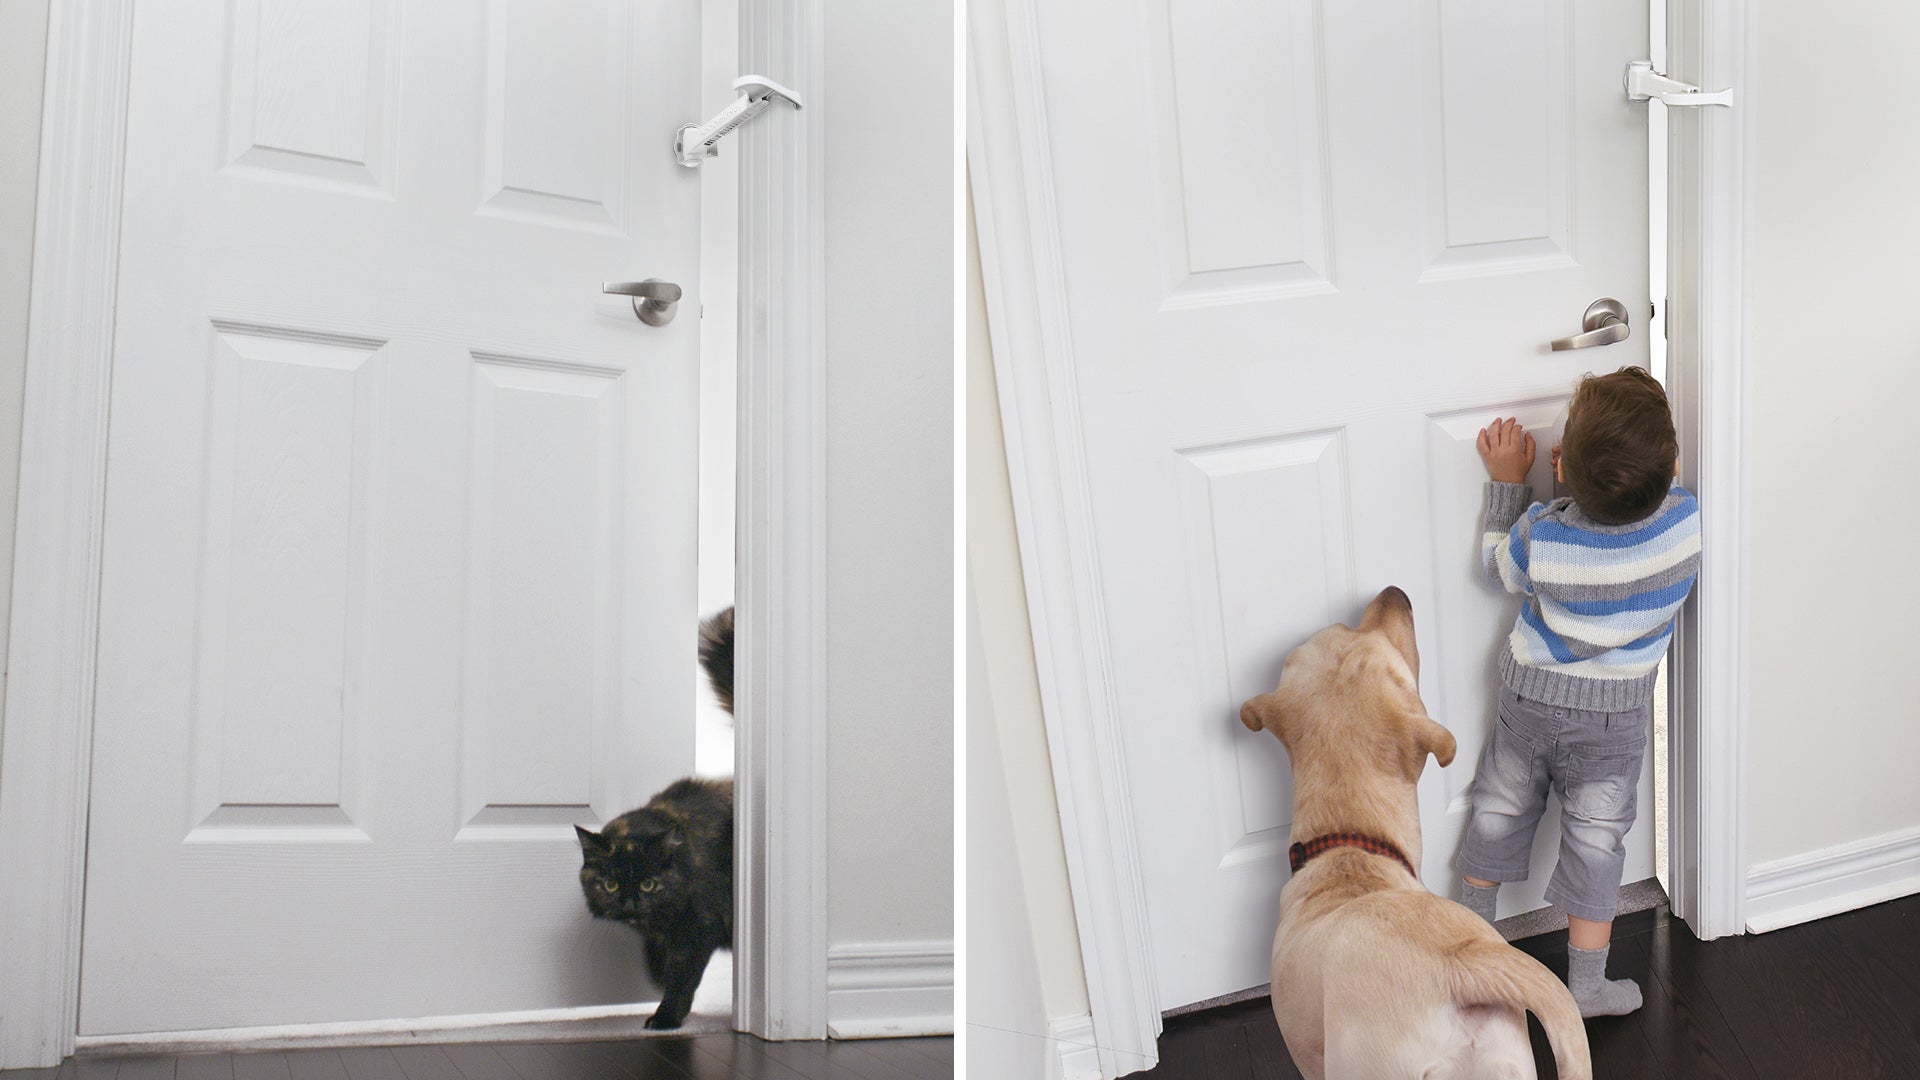 Video laden: DOORWING portable door lock and door stopper door guard for child proofing and pet proofing doors